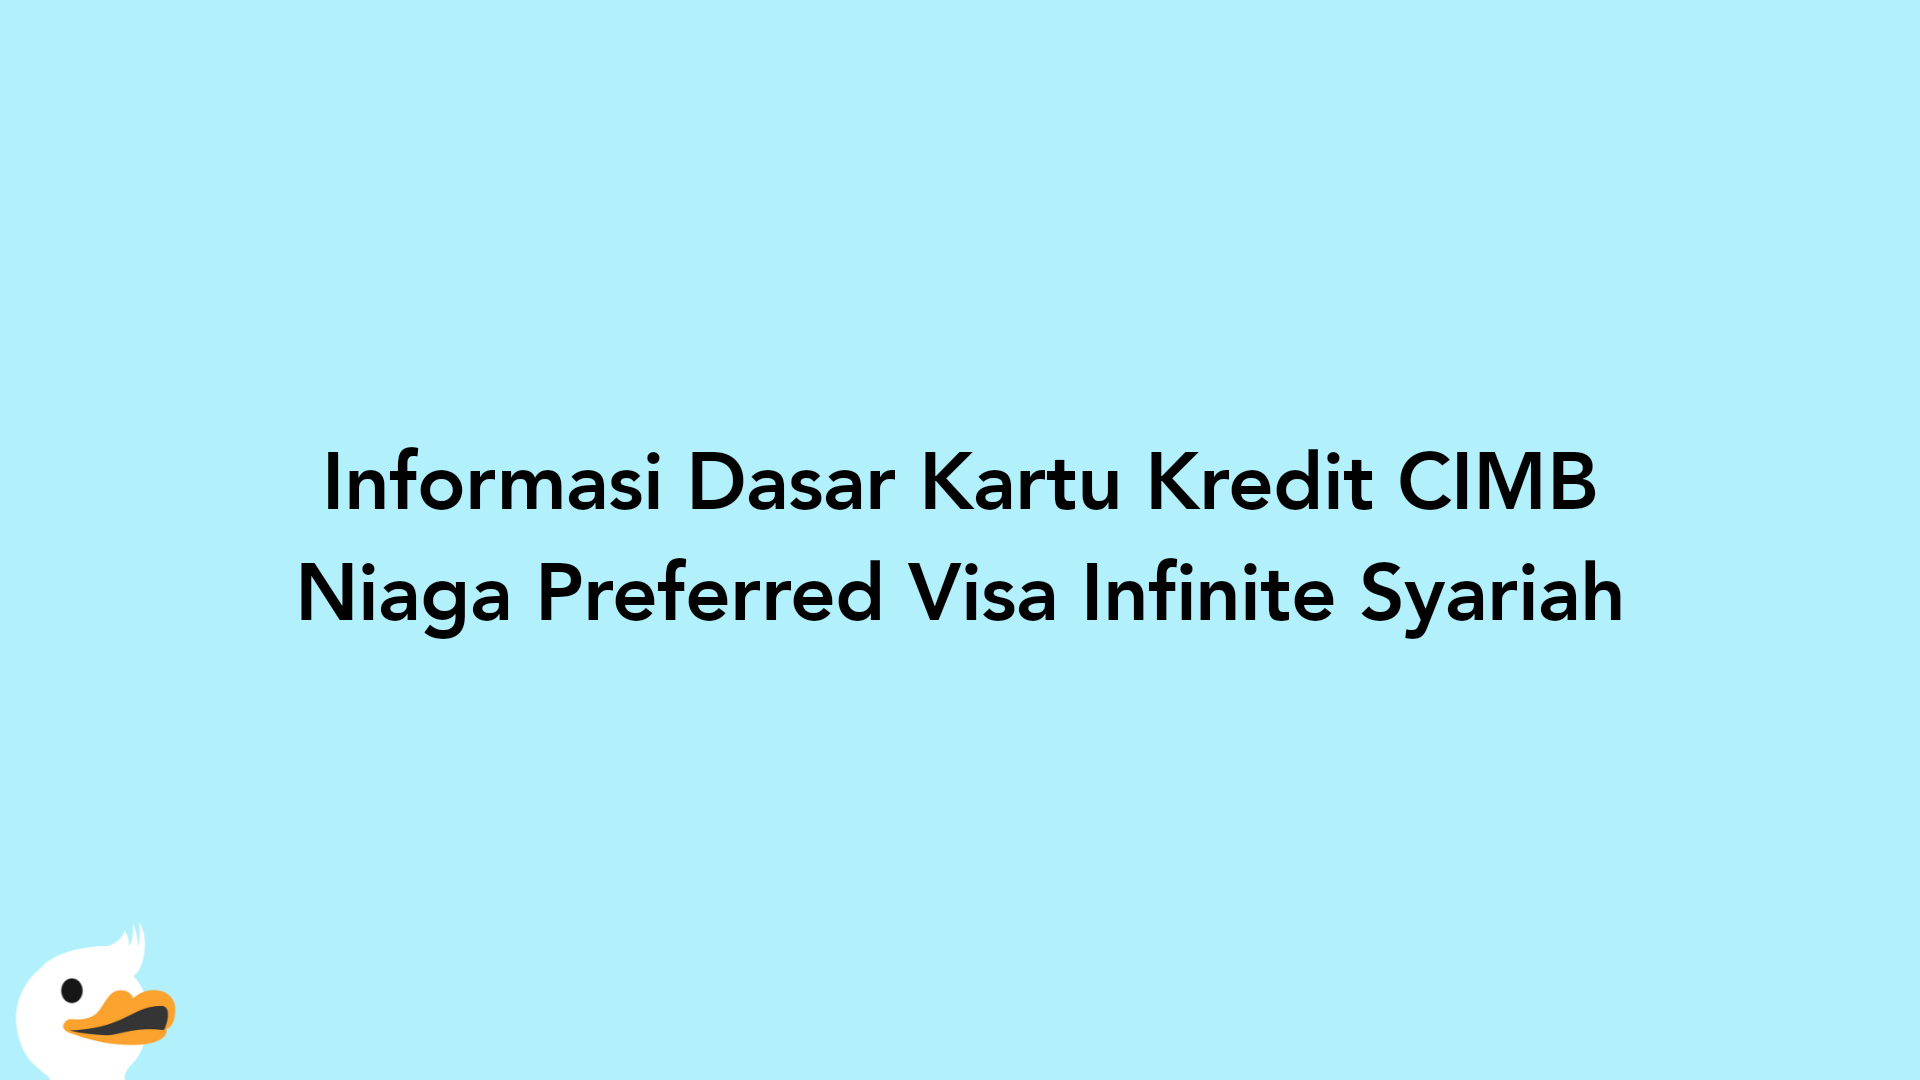 Informasi Dasar Kartu Kredit CIMB Niaga Preferred Visa Infinite Syariah